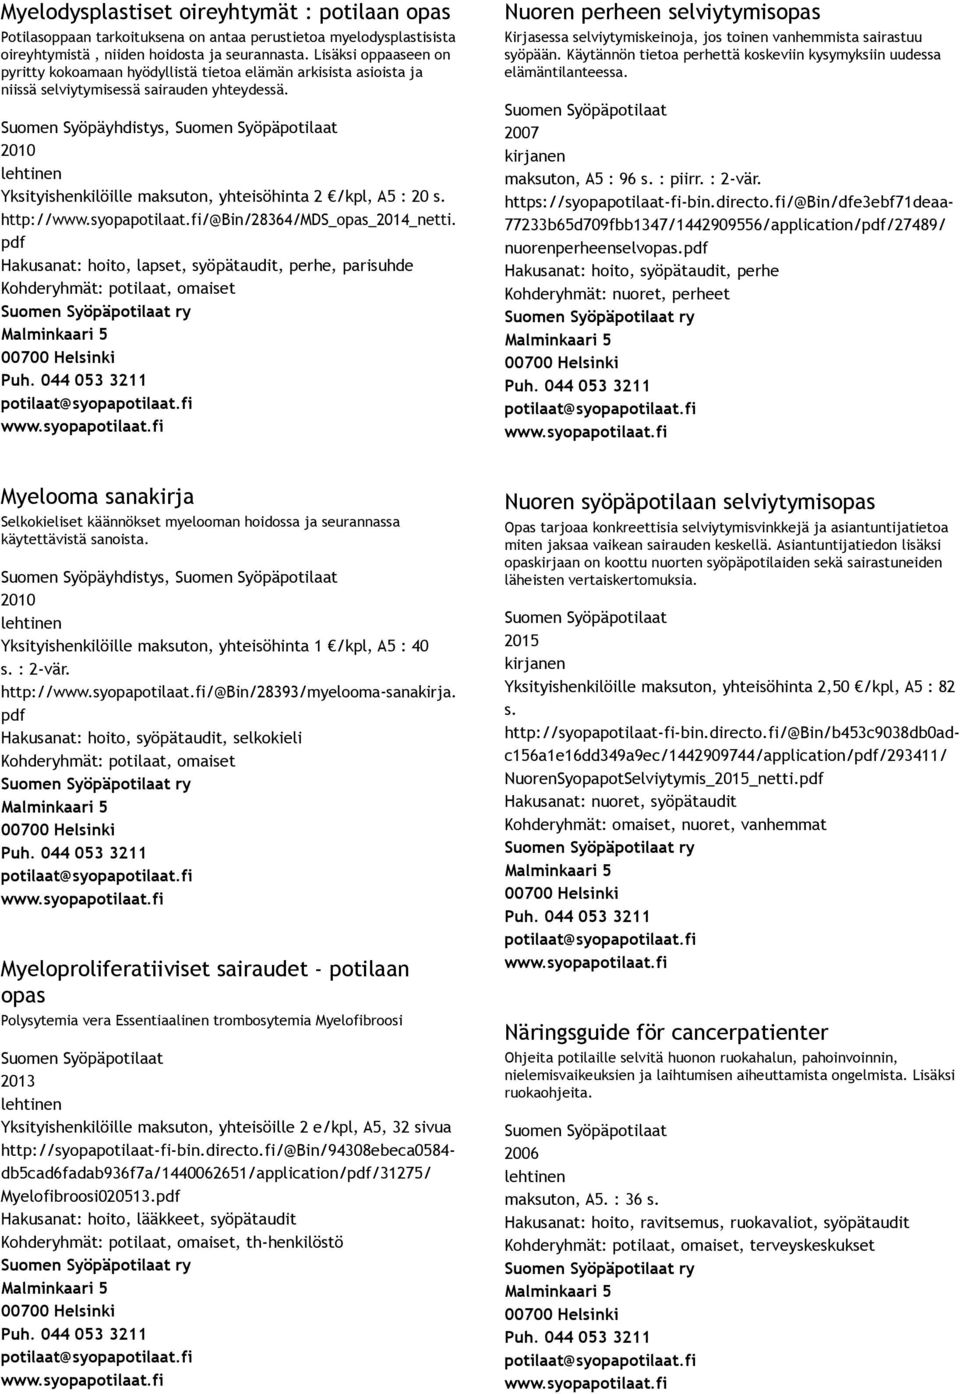 Suomen Syöpäyhdistys, 2010 Yksityishenkilöille maksuton, yhteisöhinta 2 /kpl, A5 : 20 s. http:///@bin/28364/mds_opas netti.